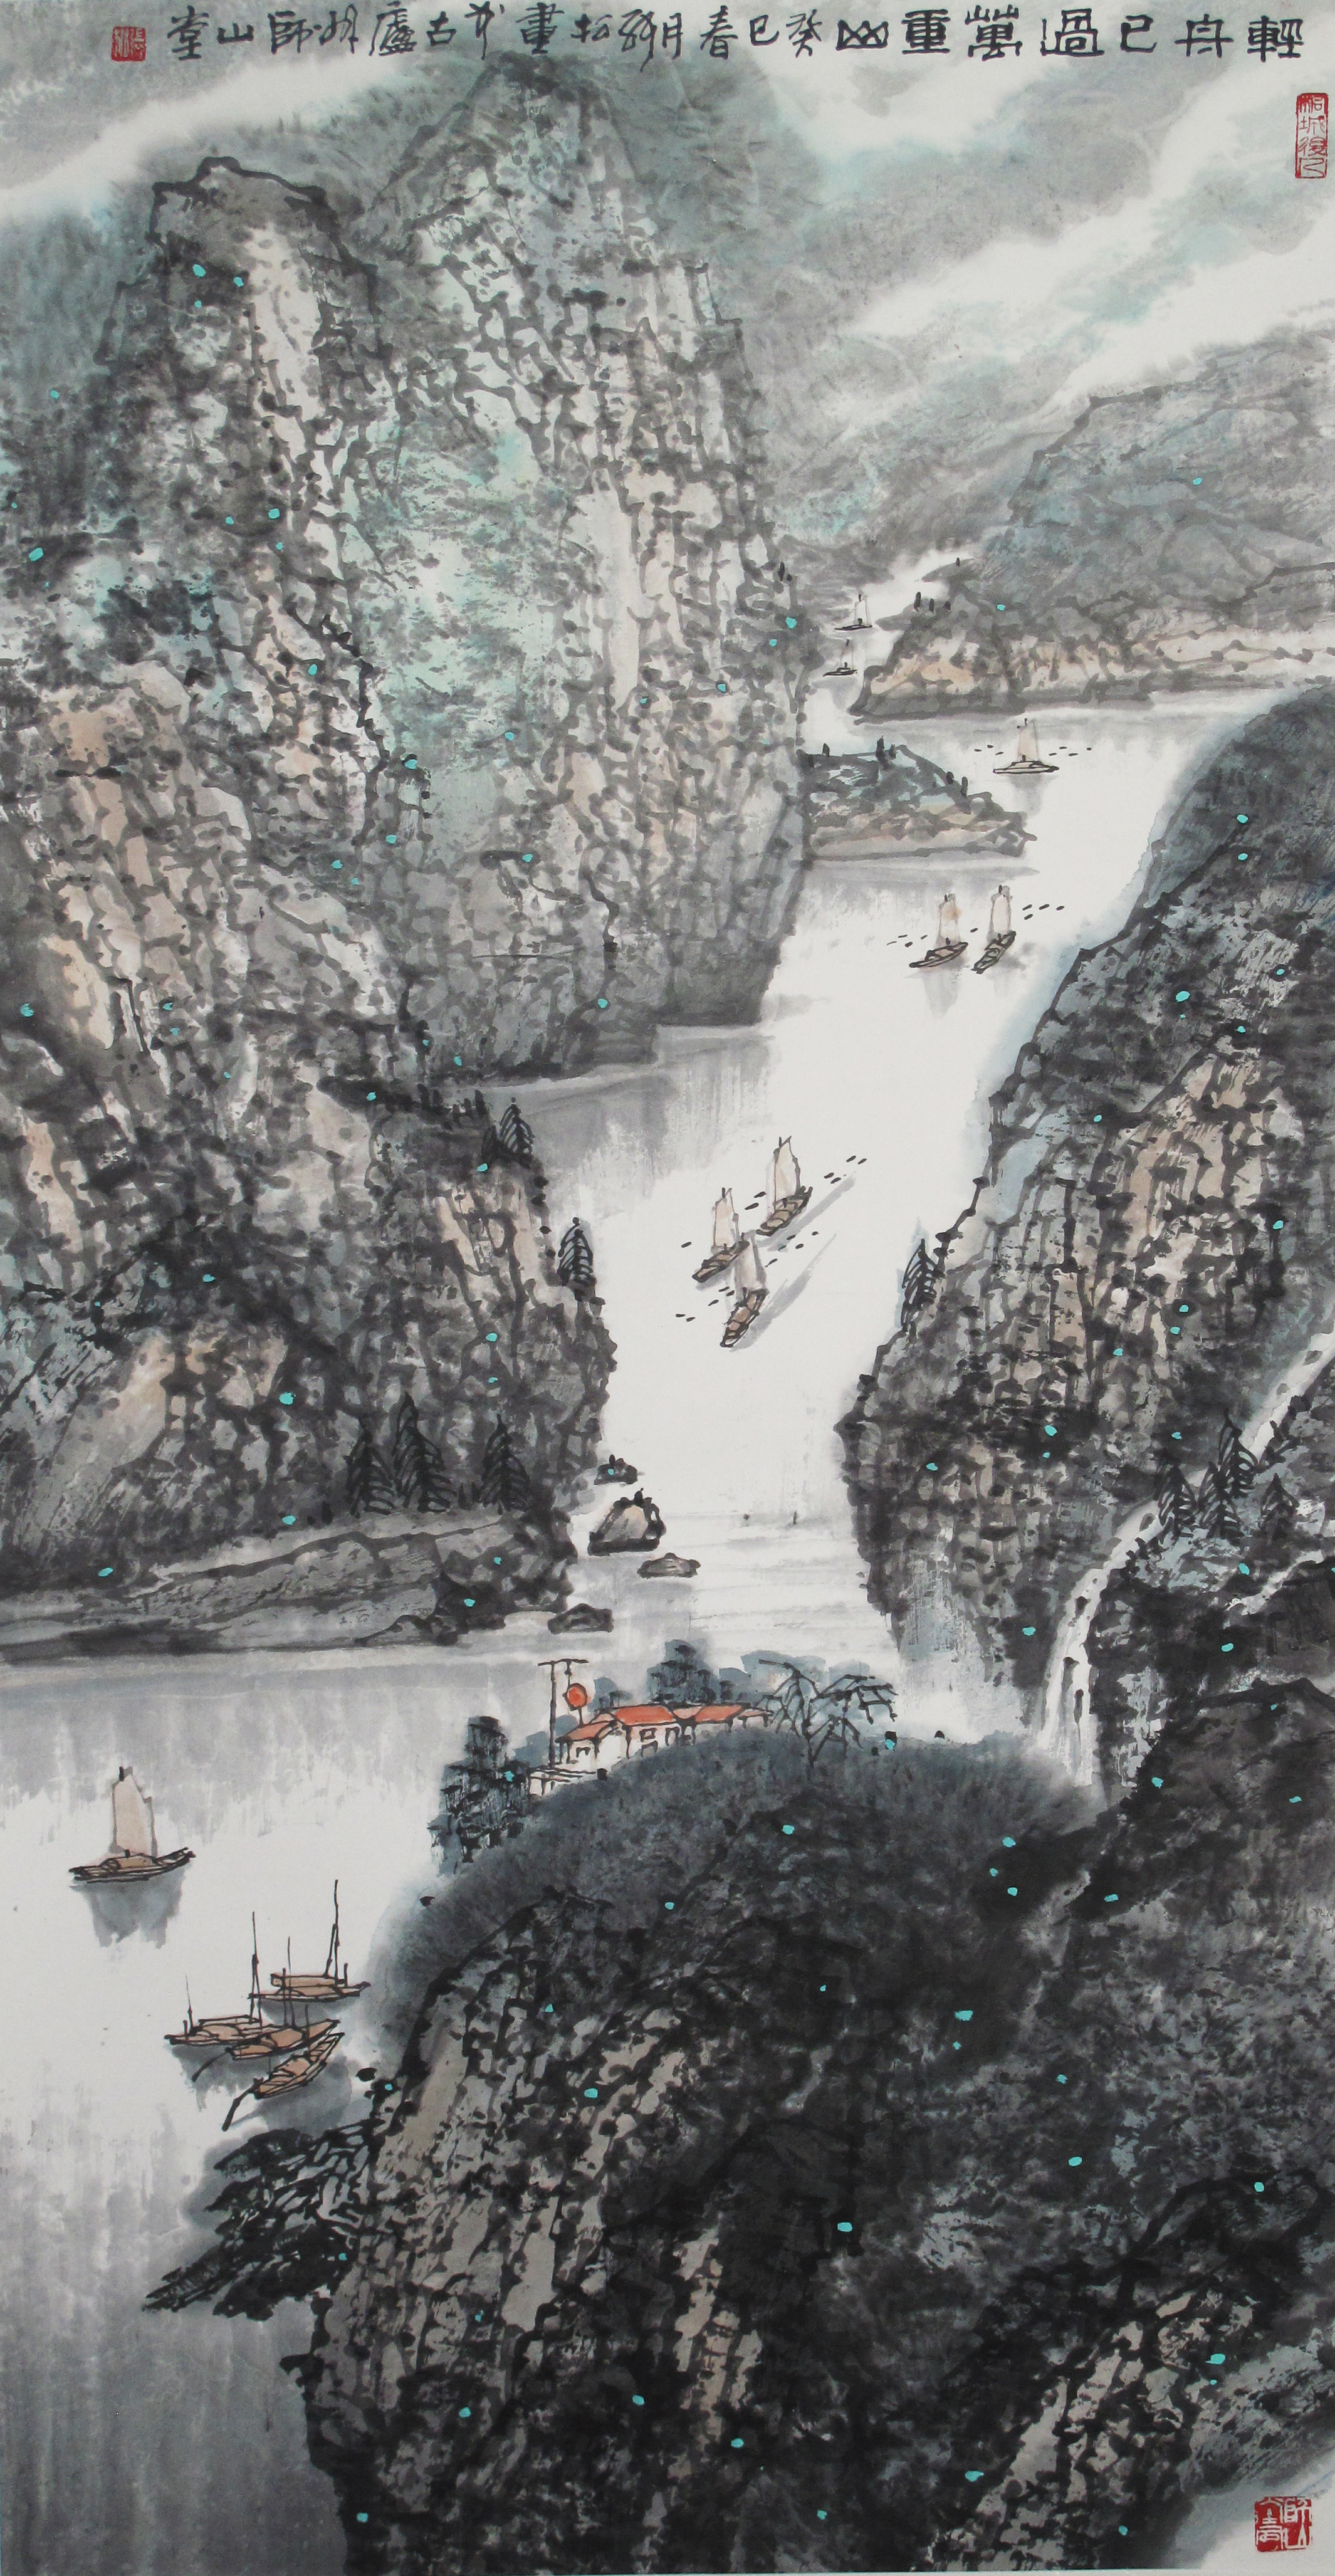 张松的山水作品,有一种江南水乡的韵律和安逸,给人感觉很舒服